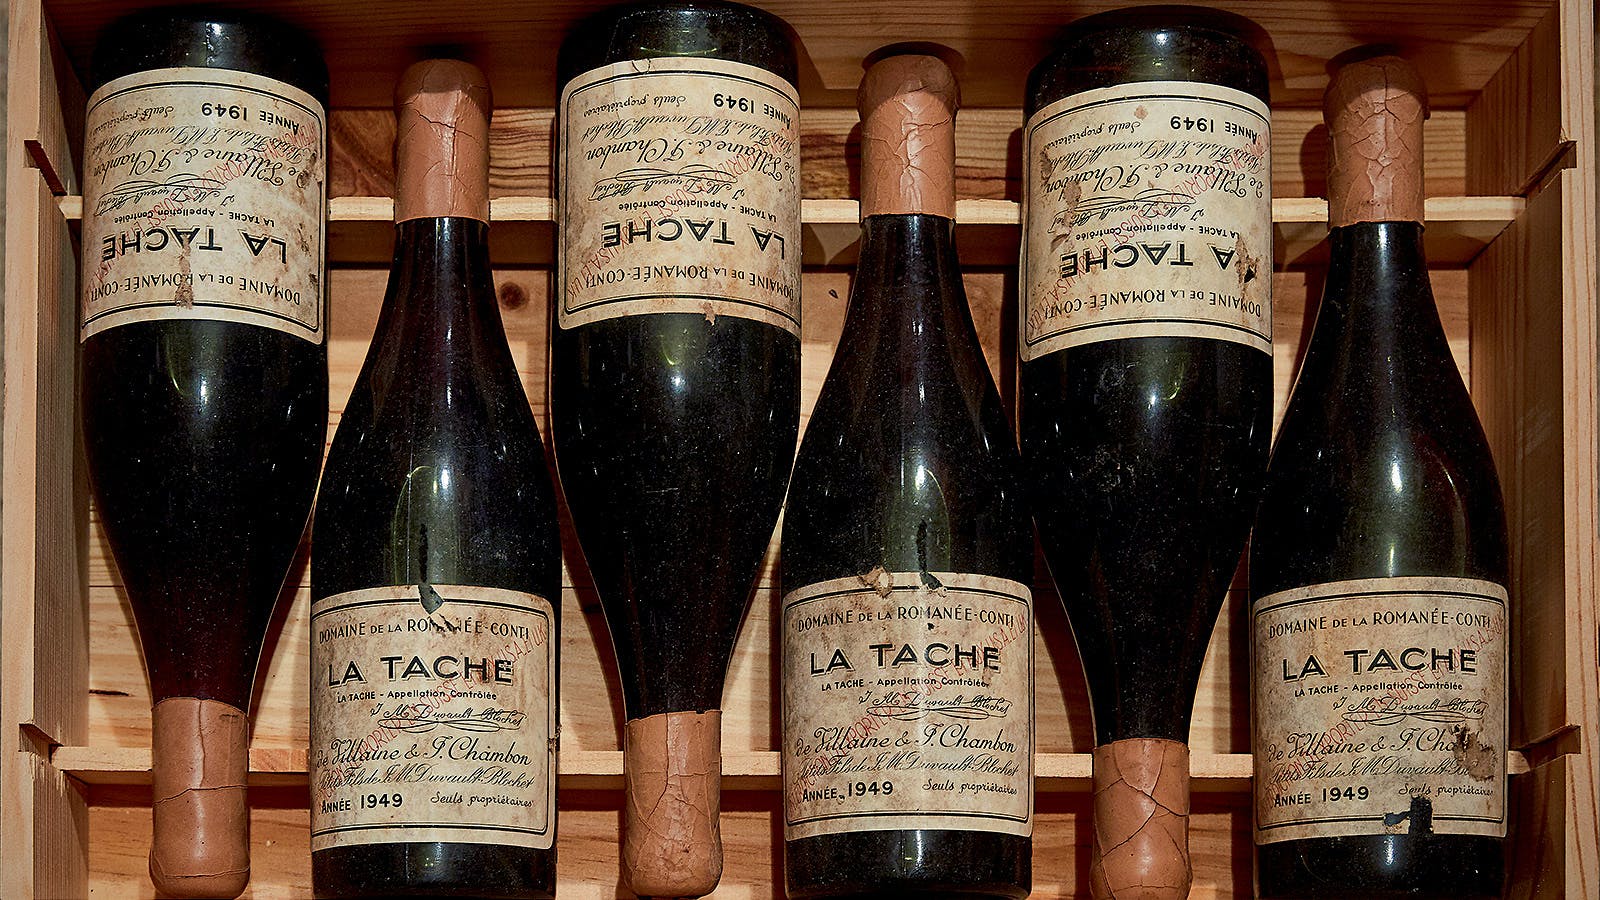 1945 Romanee-Conti Wine - $558,000